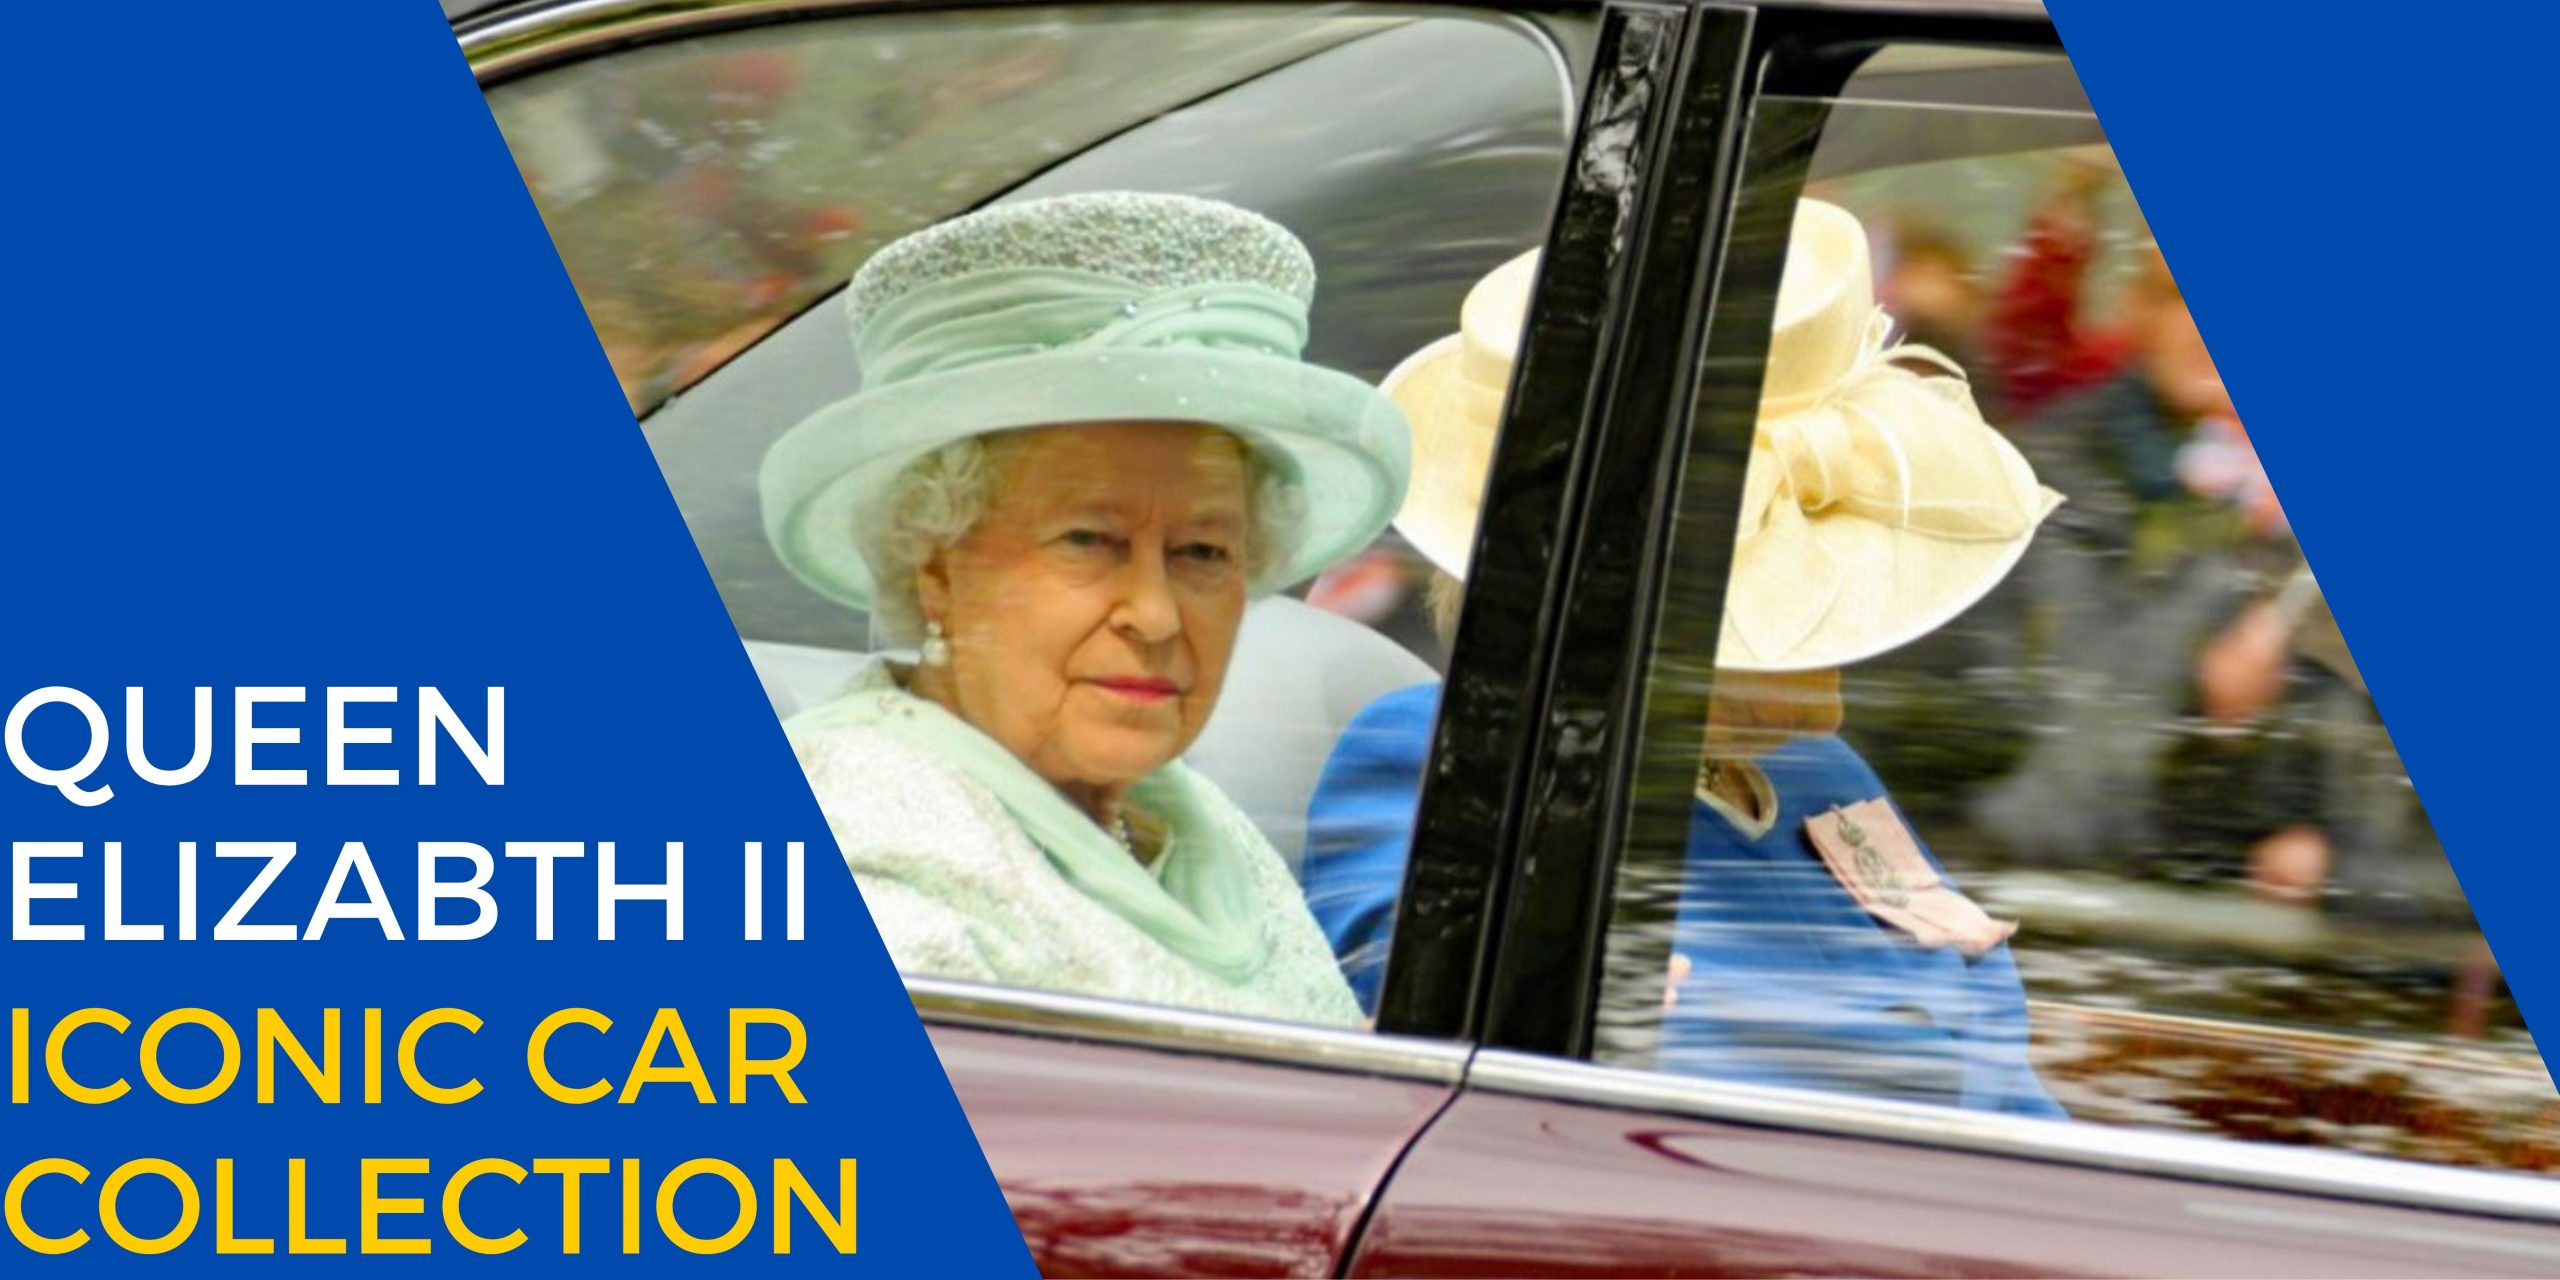 Car collection of Queen Elizabeth